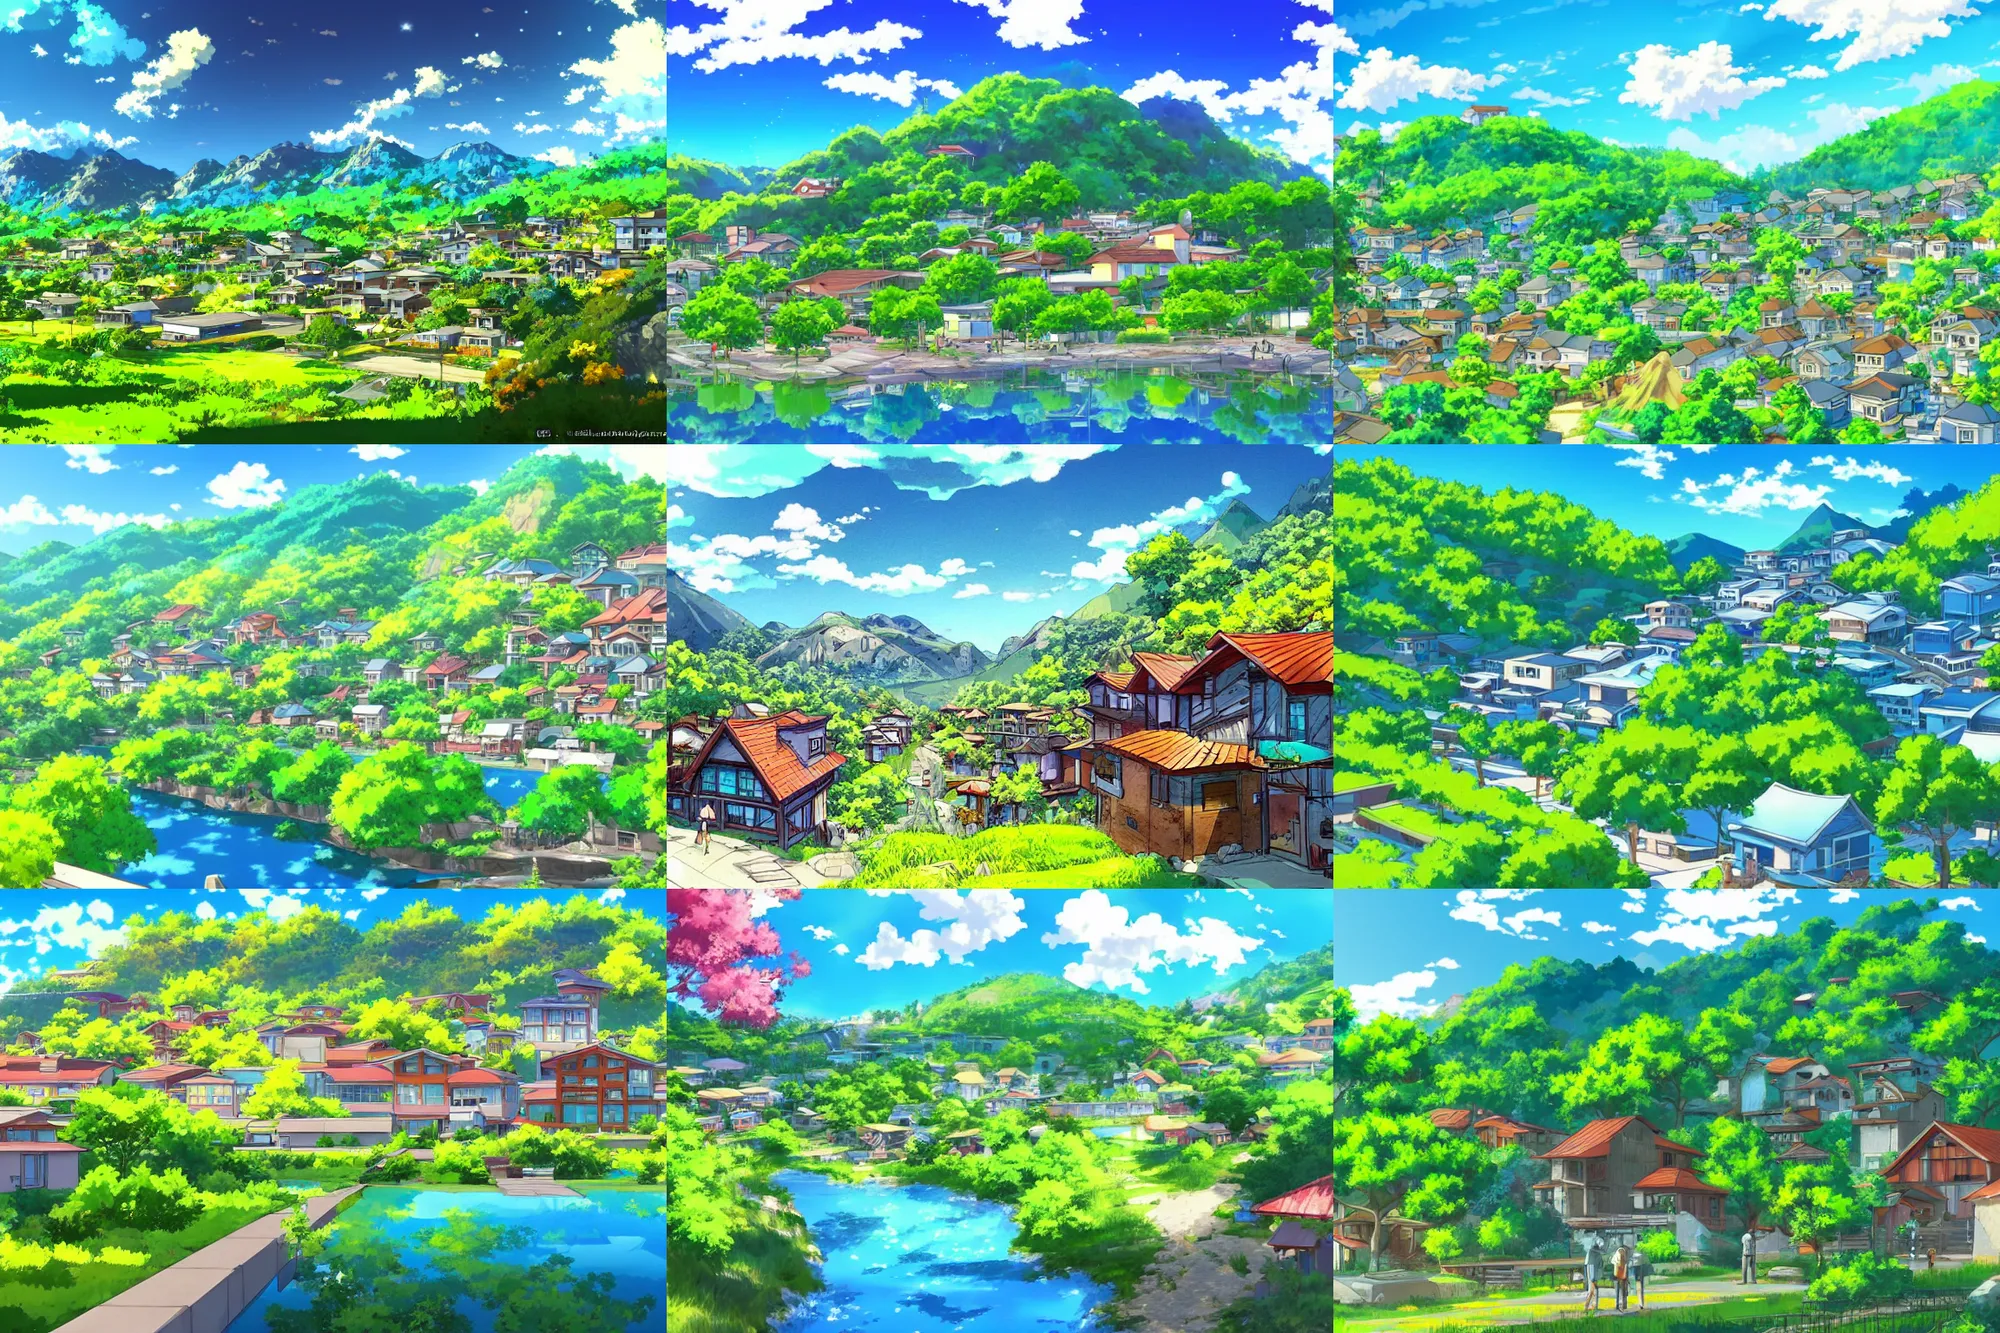 Anime Girl & Mountains Desktop Wallpaper - Anime Wallpaper 4K